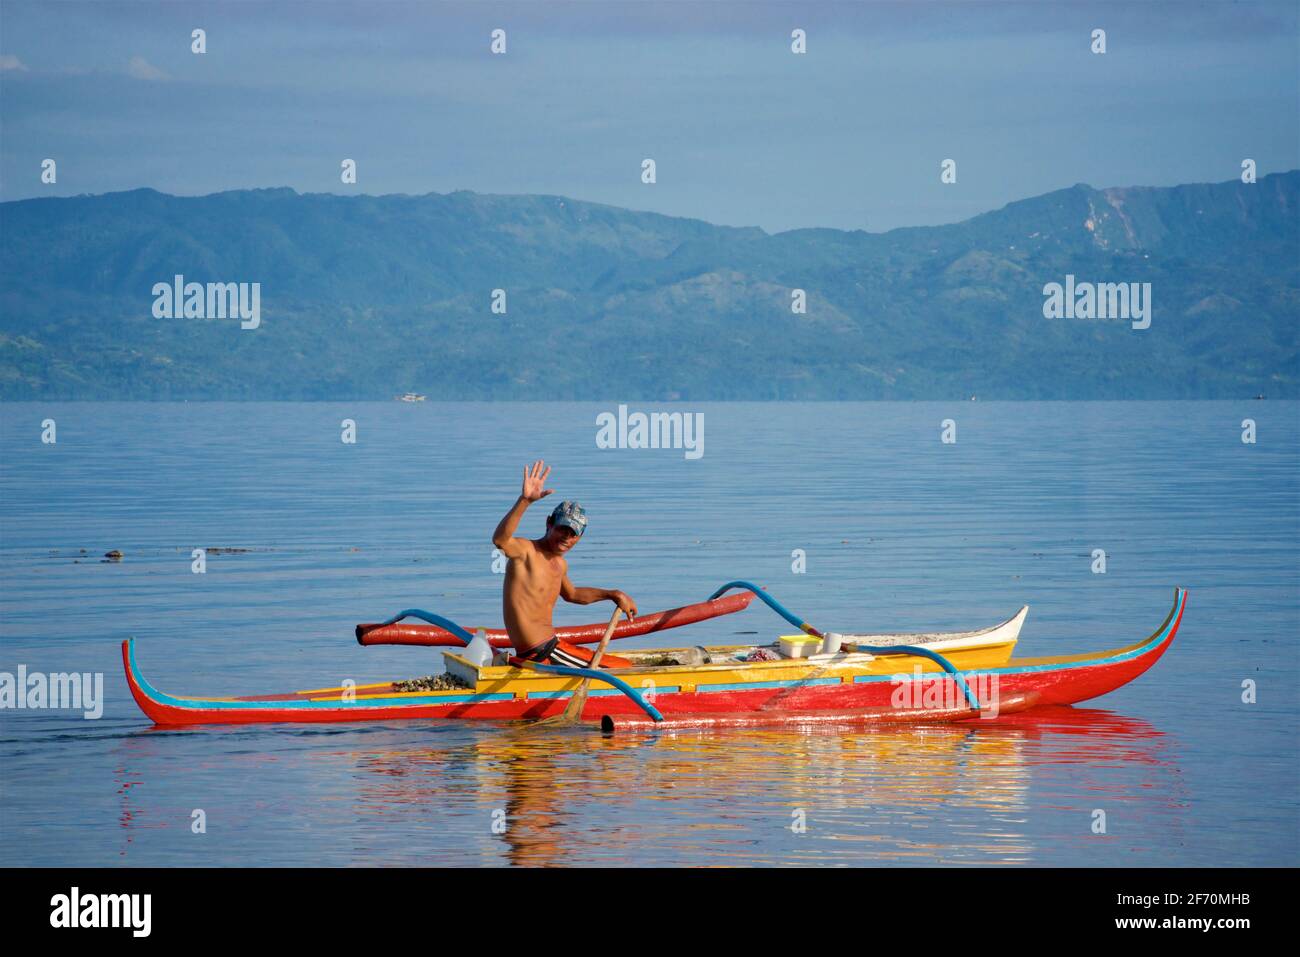 Pêcheur philippin agitant alors qu'il se prépare à prendre son canot de stabilisateur pour pêcher dans la mer de Visayan au large de Moalboal, île de Cebu, Philippines. Banque D'Images